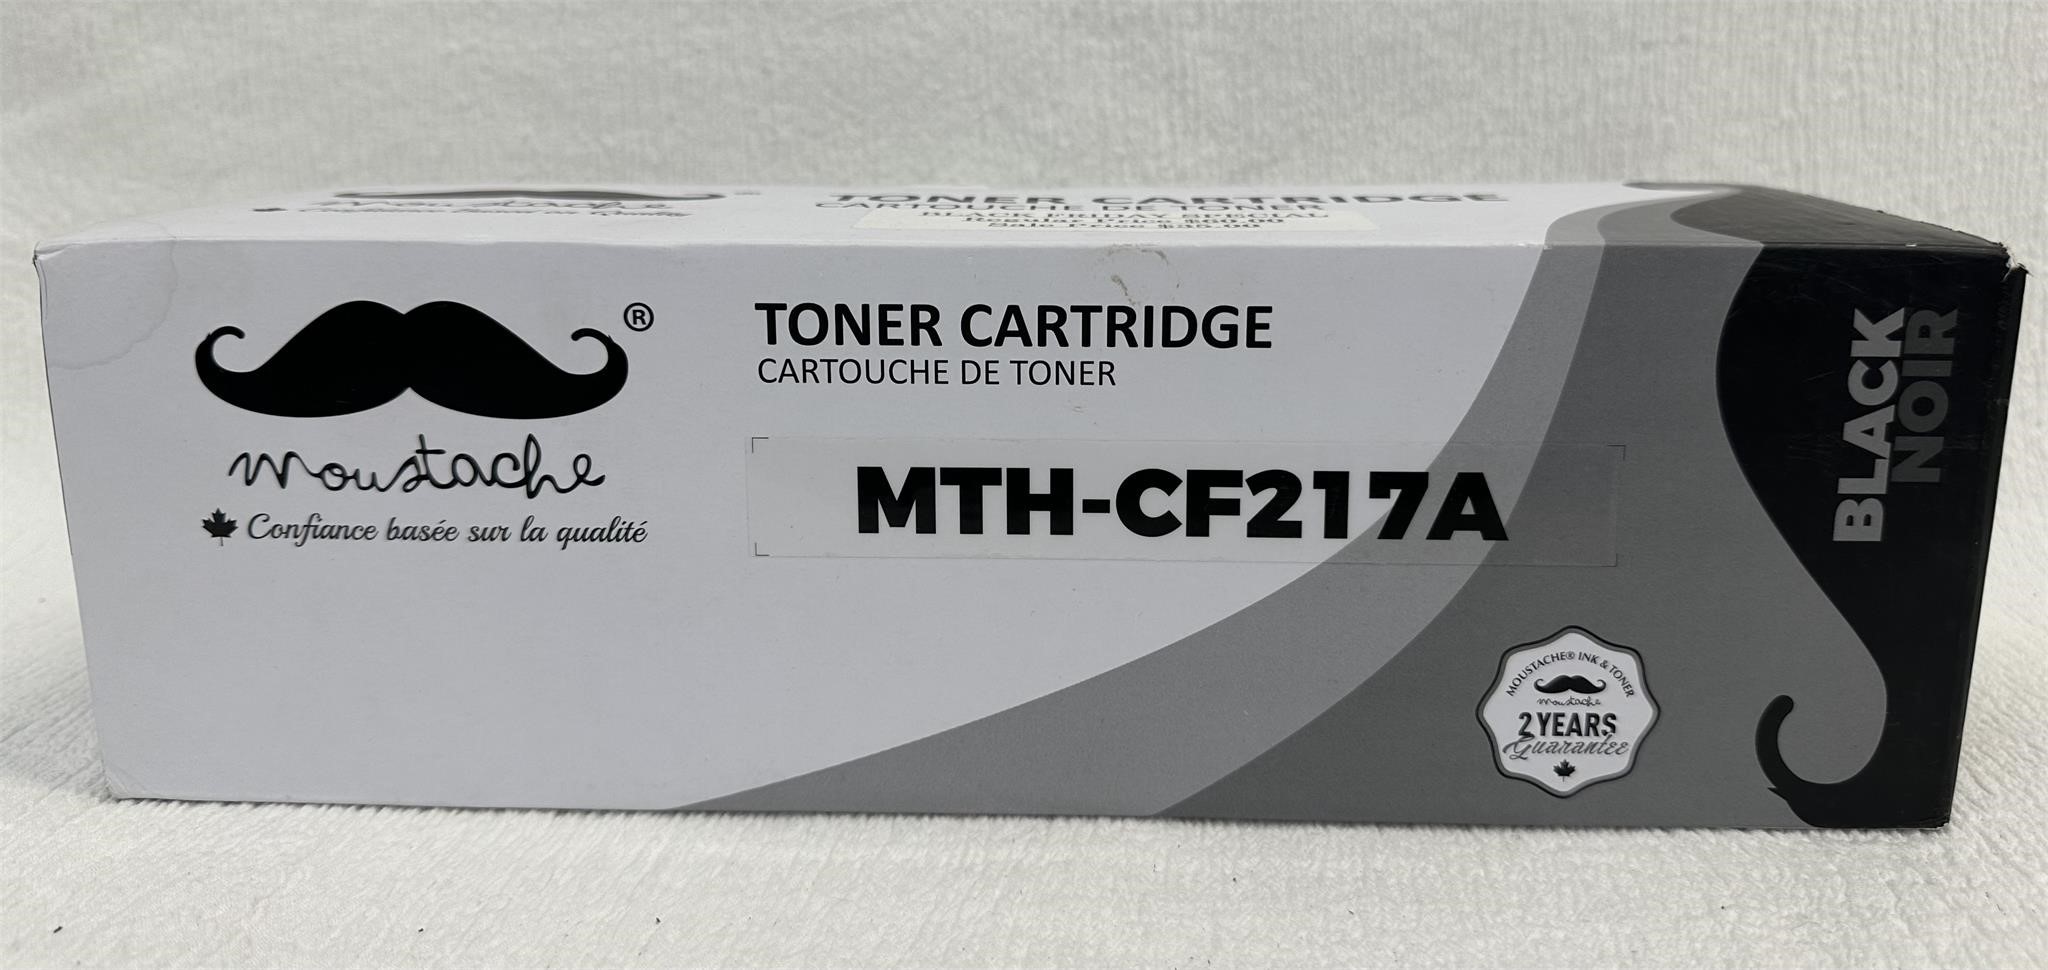 Toner Cartridge for HP Printer